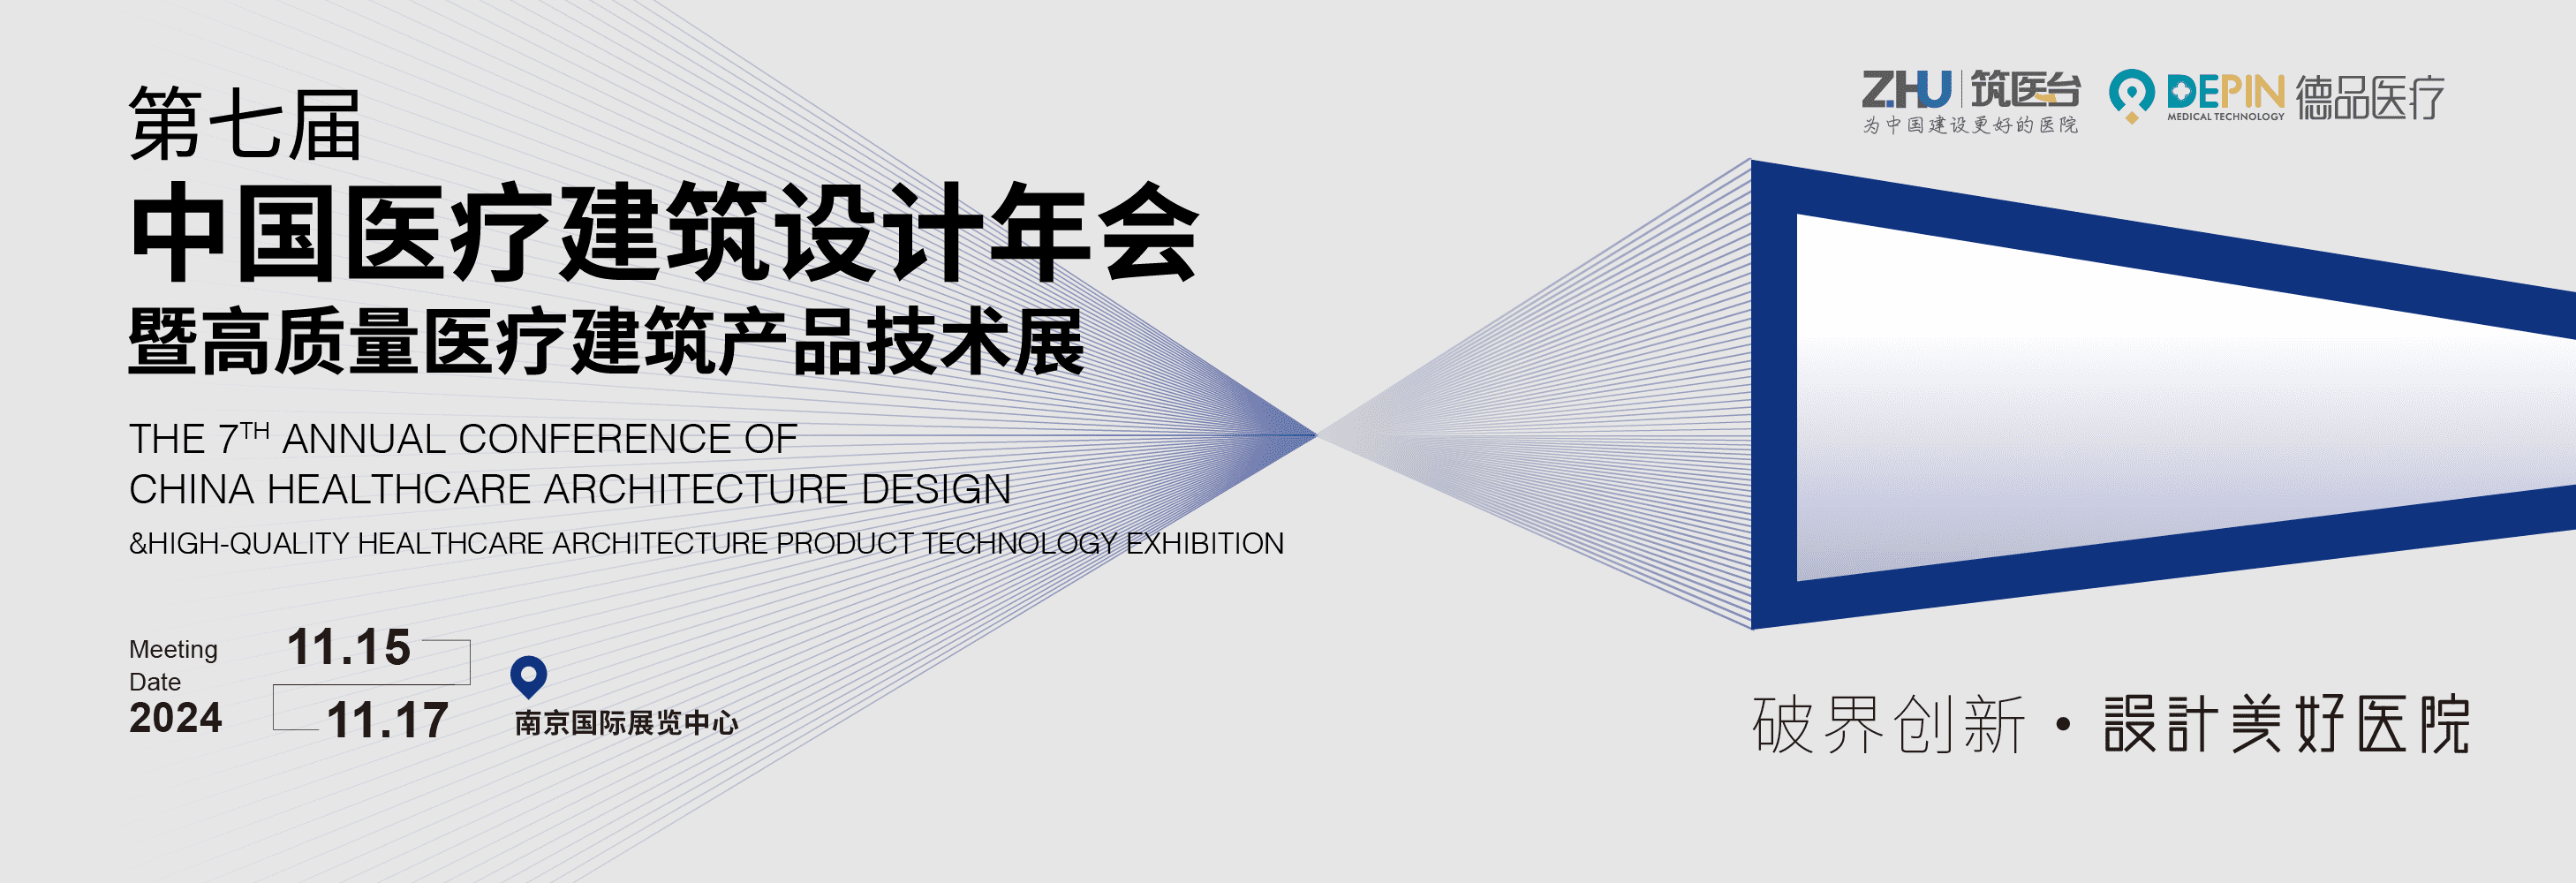 第七届中国医疗建筑设计年会